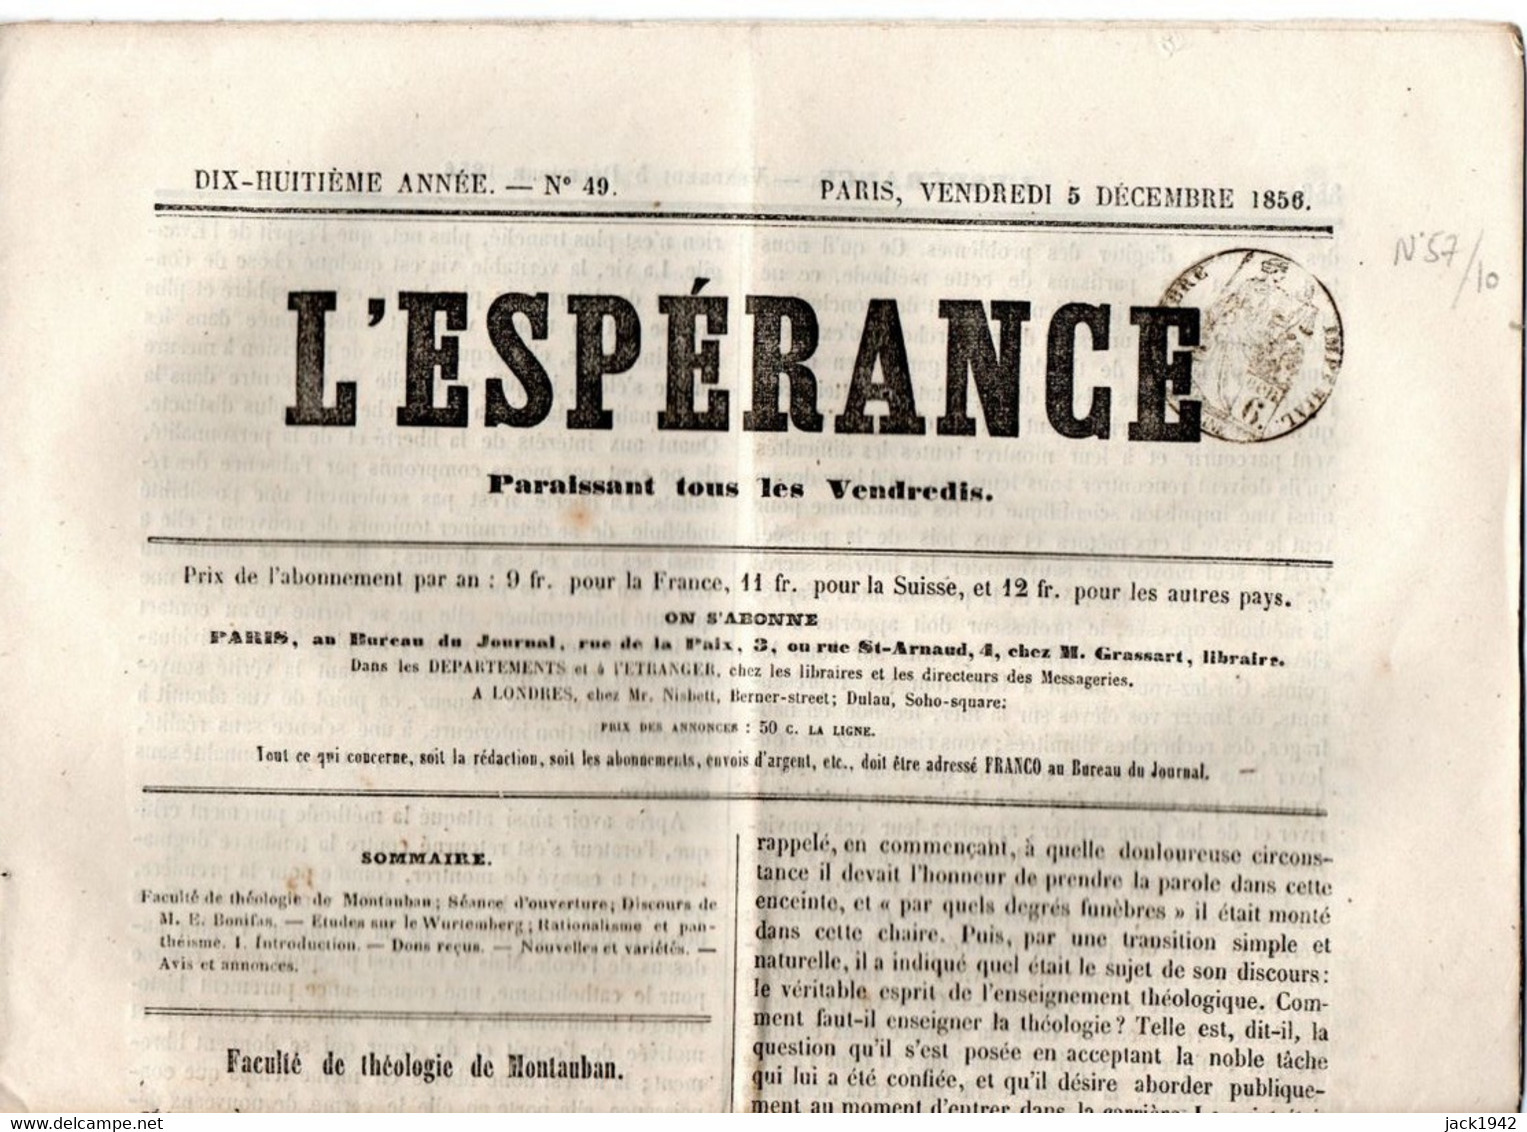 Journal L'Espérance Du 5 Décembre 1856, Avec Timbre Humide " Timbre / Impérial 6 Centimes" - Periódicos